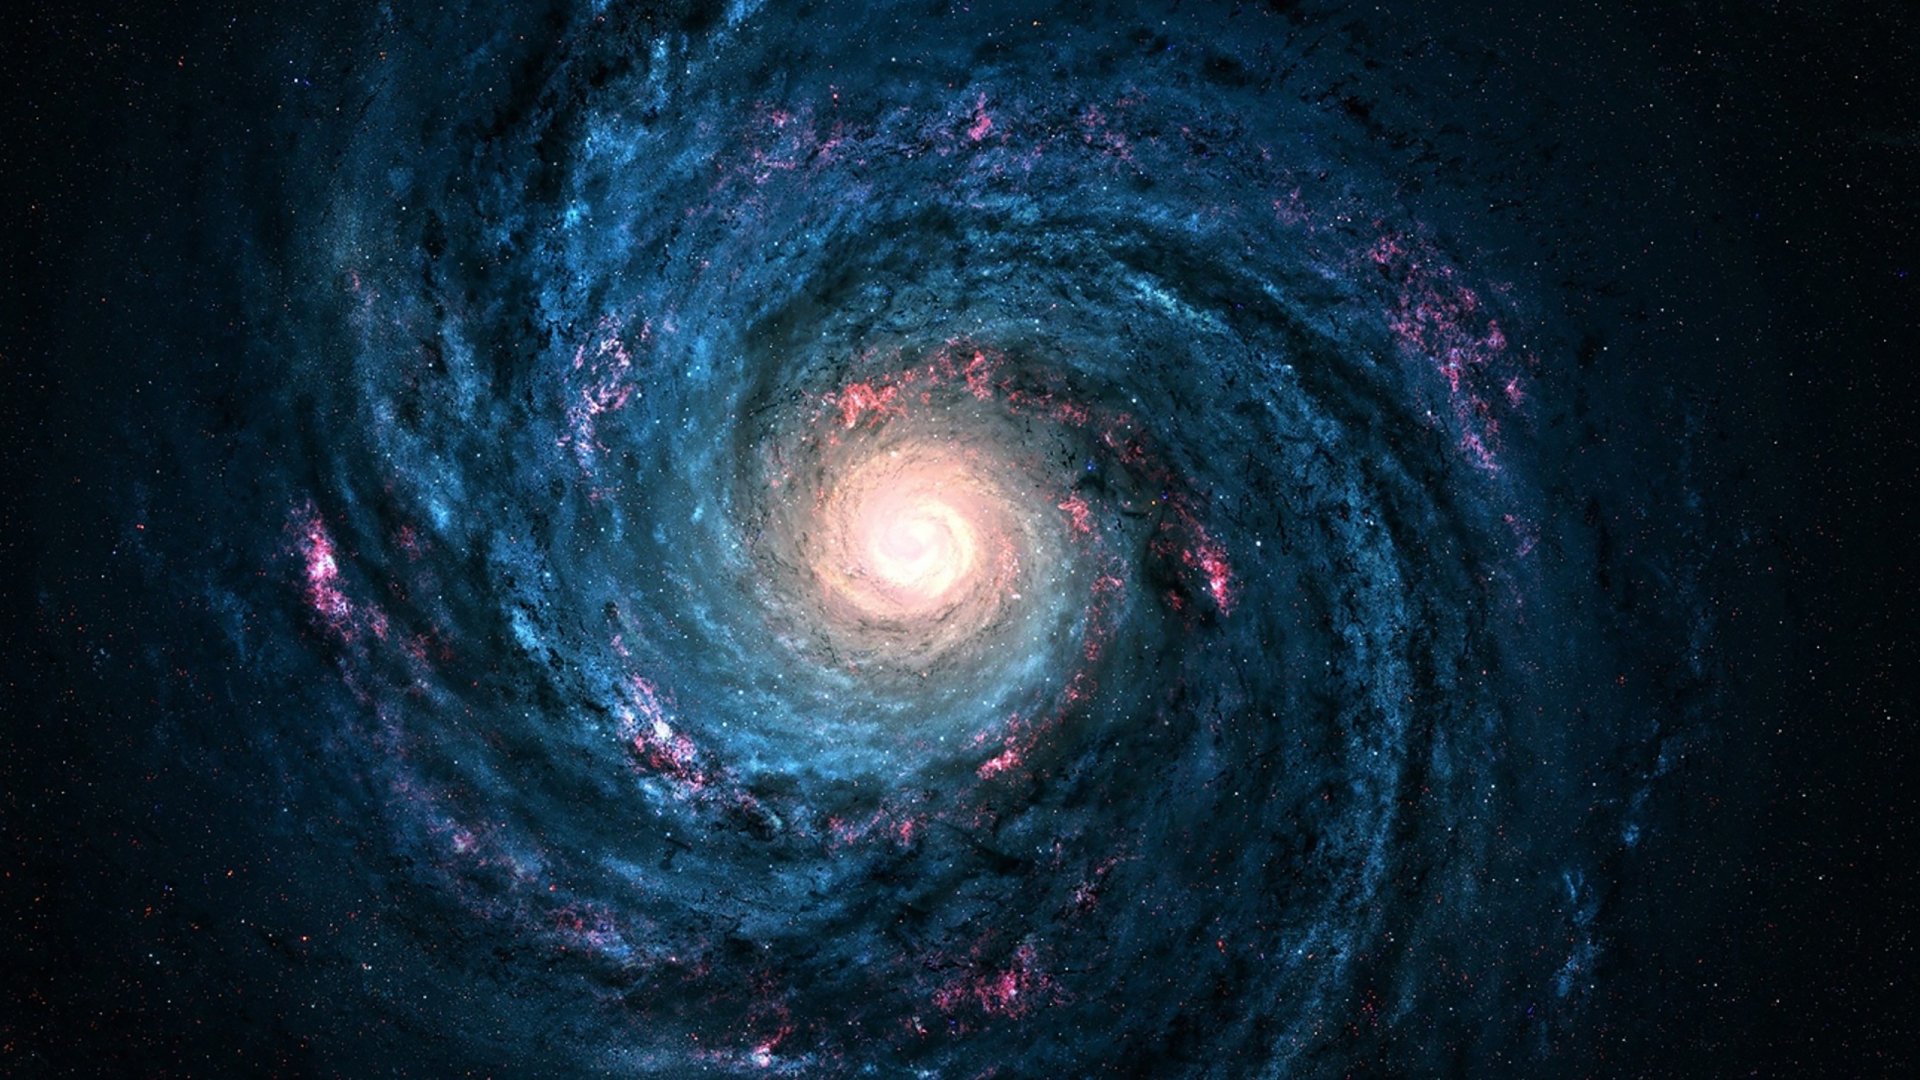 Không gian bao la và những thiên hà điêu khắc là nguồn cảm hứng cho thể loại khoa học viễn tưởng. Nếu bạn cũng yêu thích những bộ phim như Star Wars hay Interstellar, hãy để cho bức ảnh này đưa bạn đến những thế giới tưởng tượng đầy màu sắc và hấp dẫn.